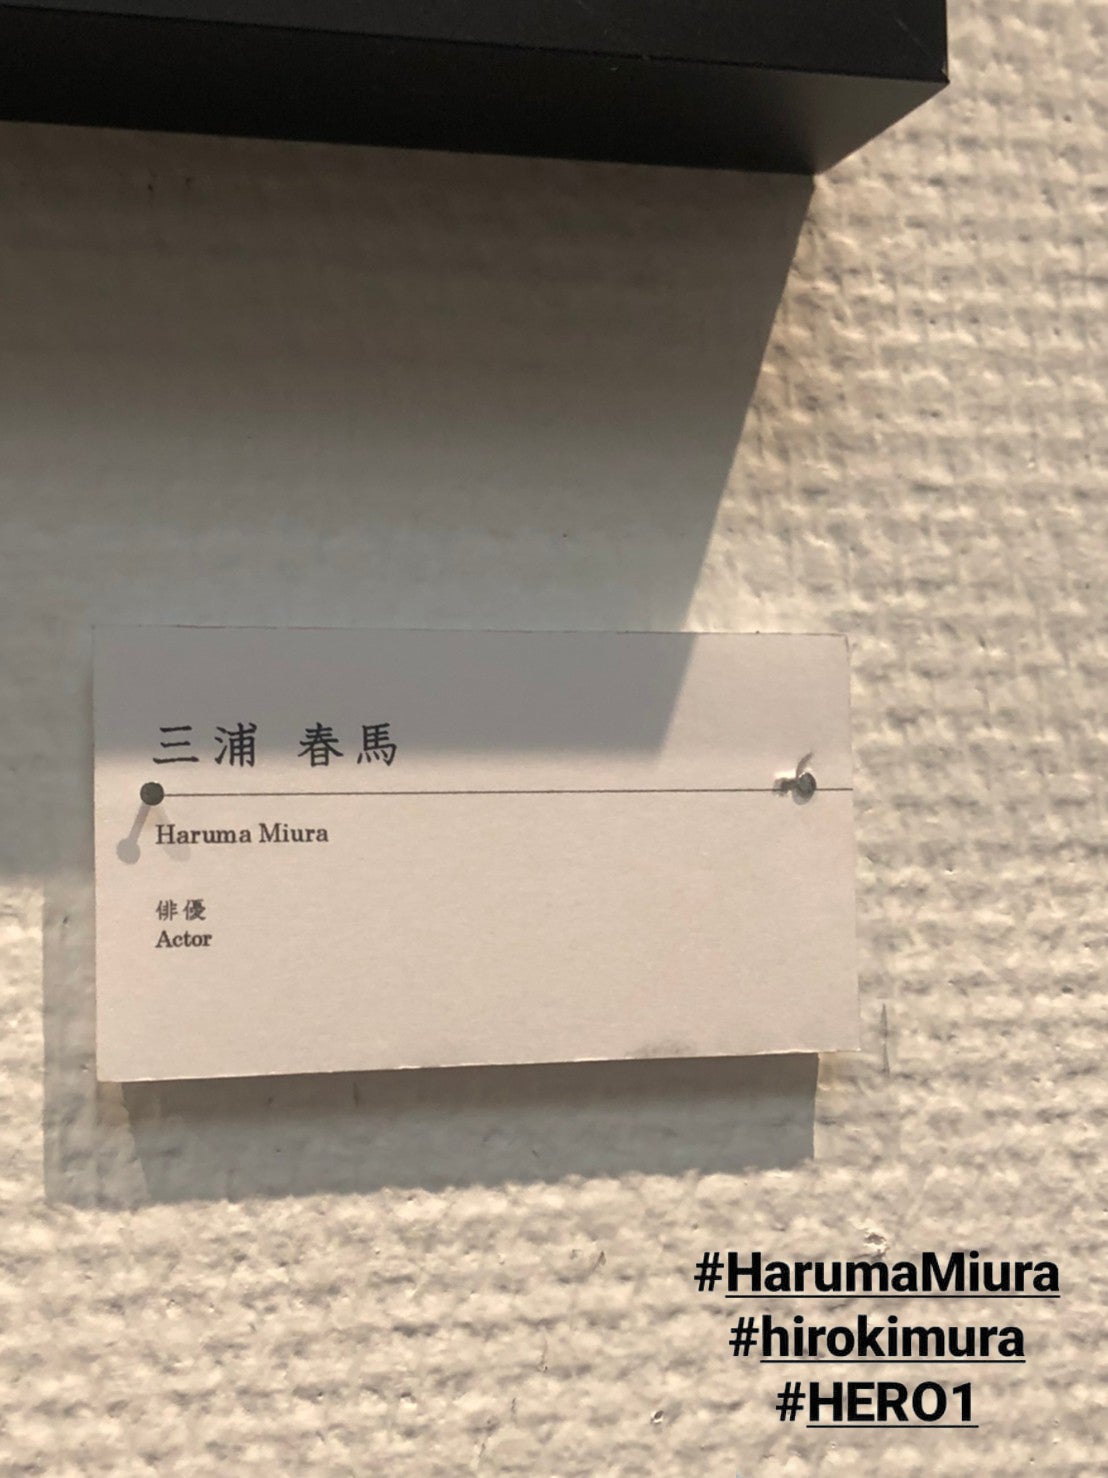 HIRO KIMURA 写真展「HERO1」 初日行ってきました | Dear Haruma*